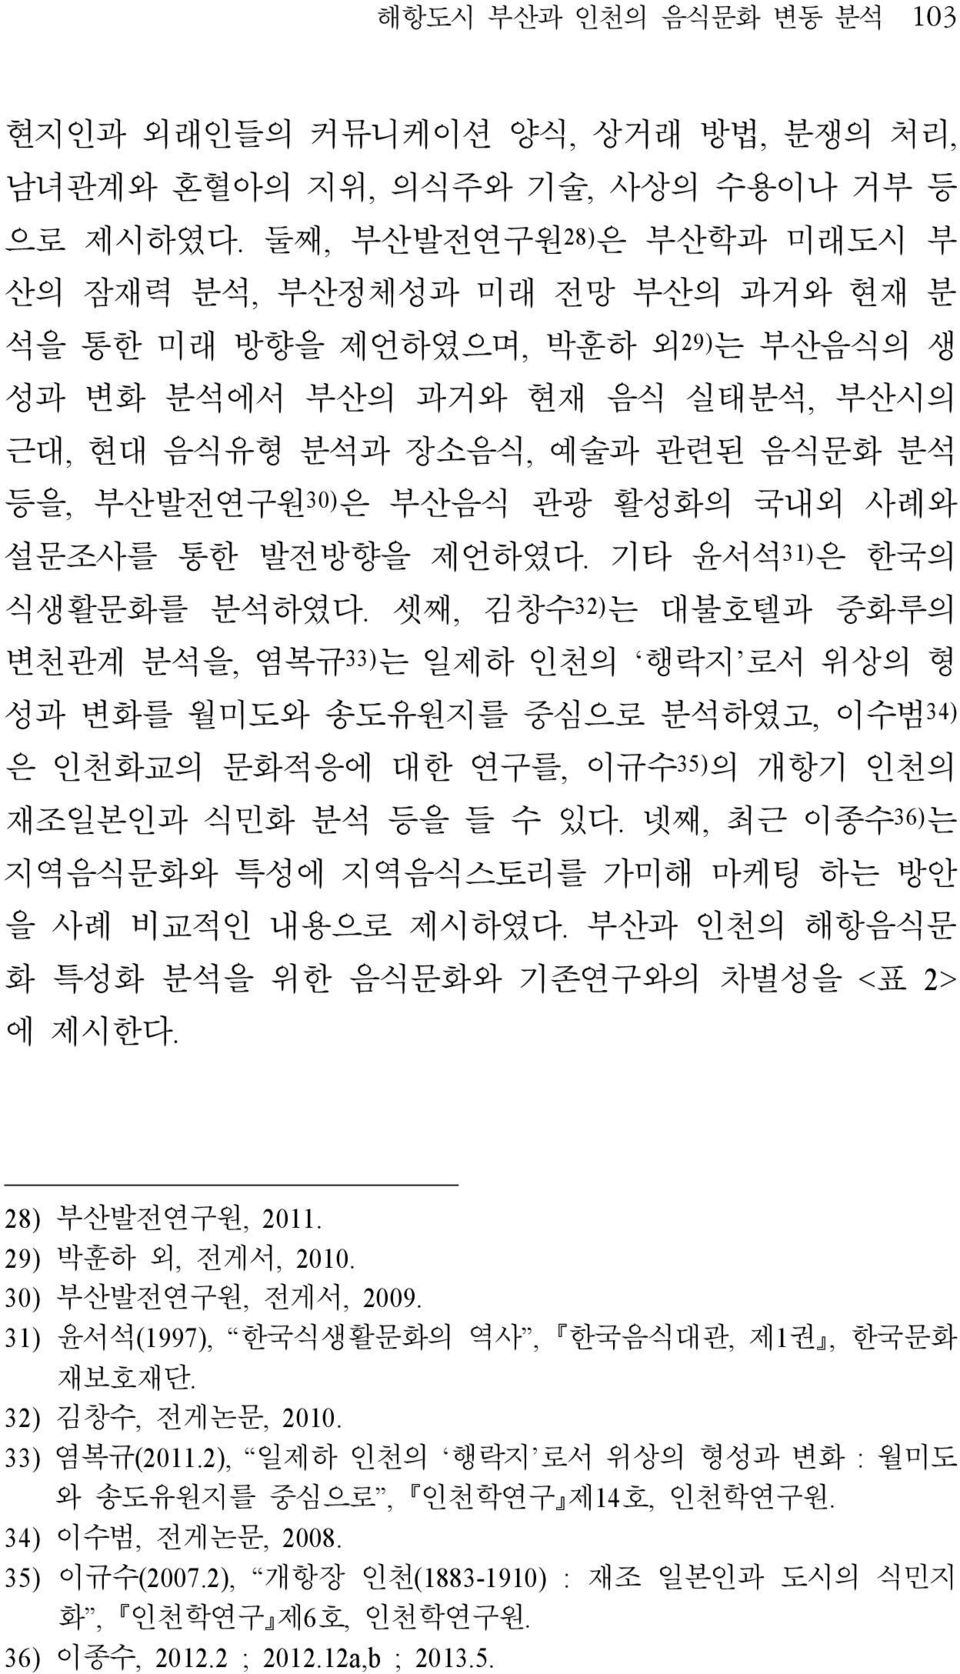 부산음식 관광 활성화의 국내외 사례와 설문조사를 통한 발전방향을 제언하였다. 기타 윤서석 31) 은 한국의 식생활문화를 분석하였다.